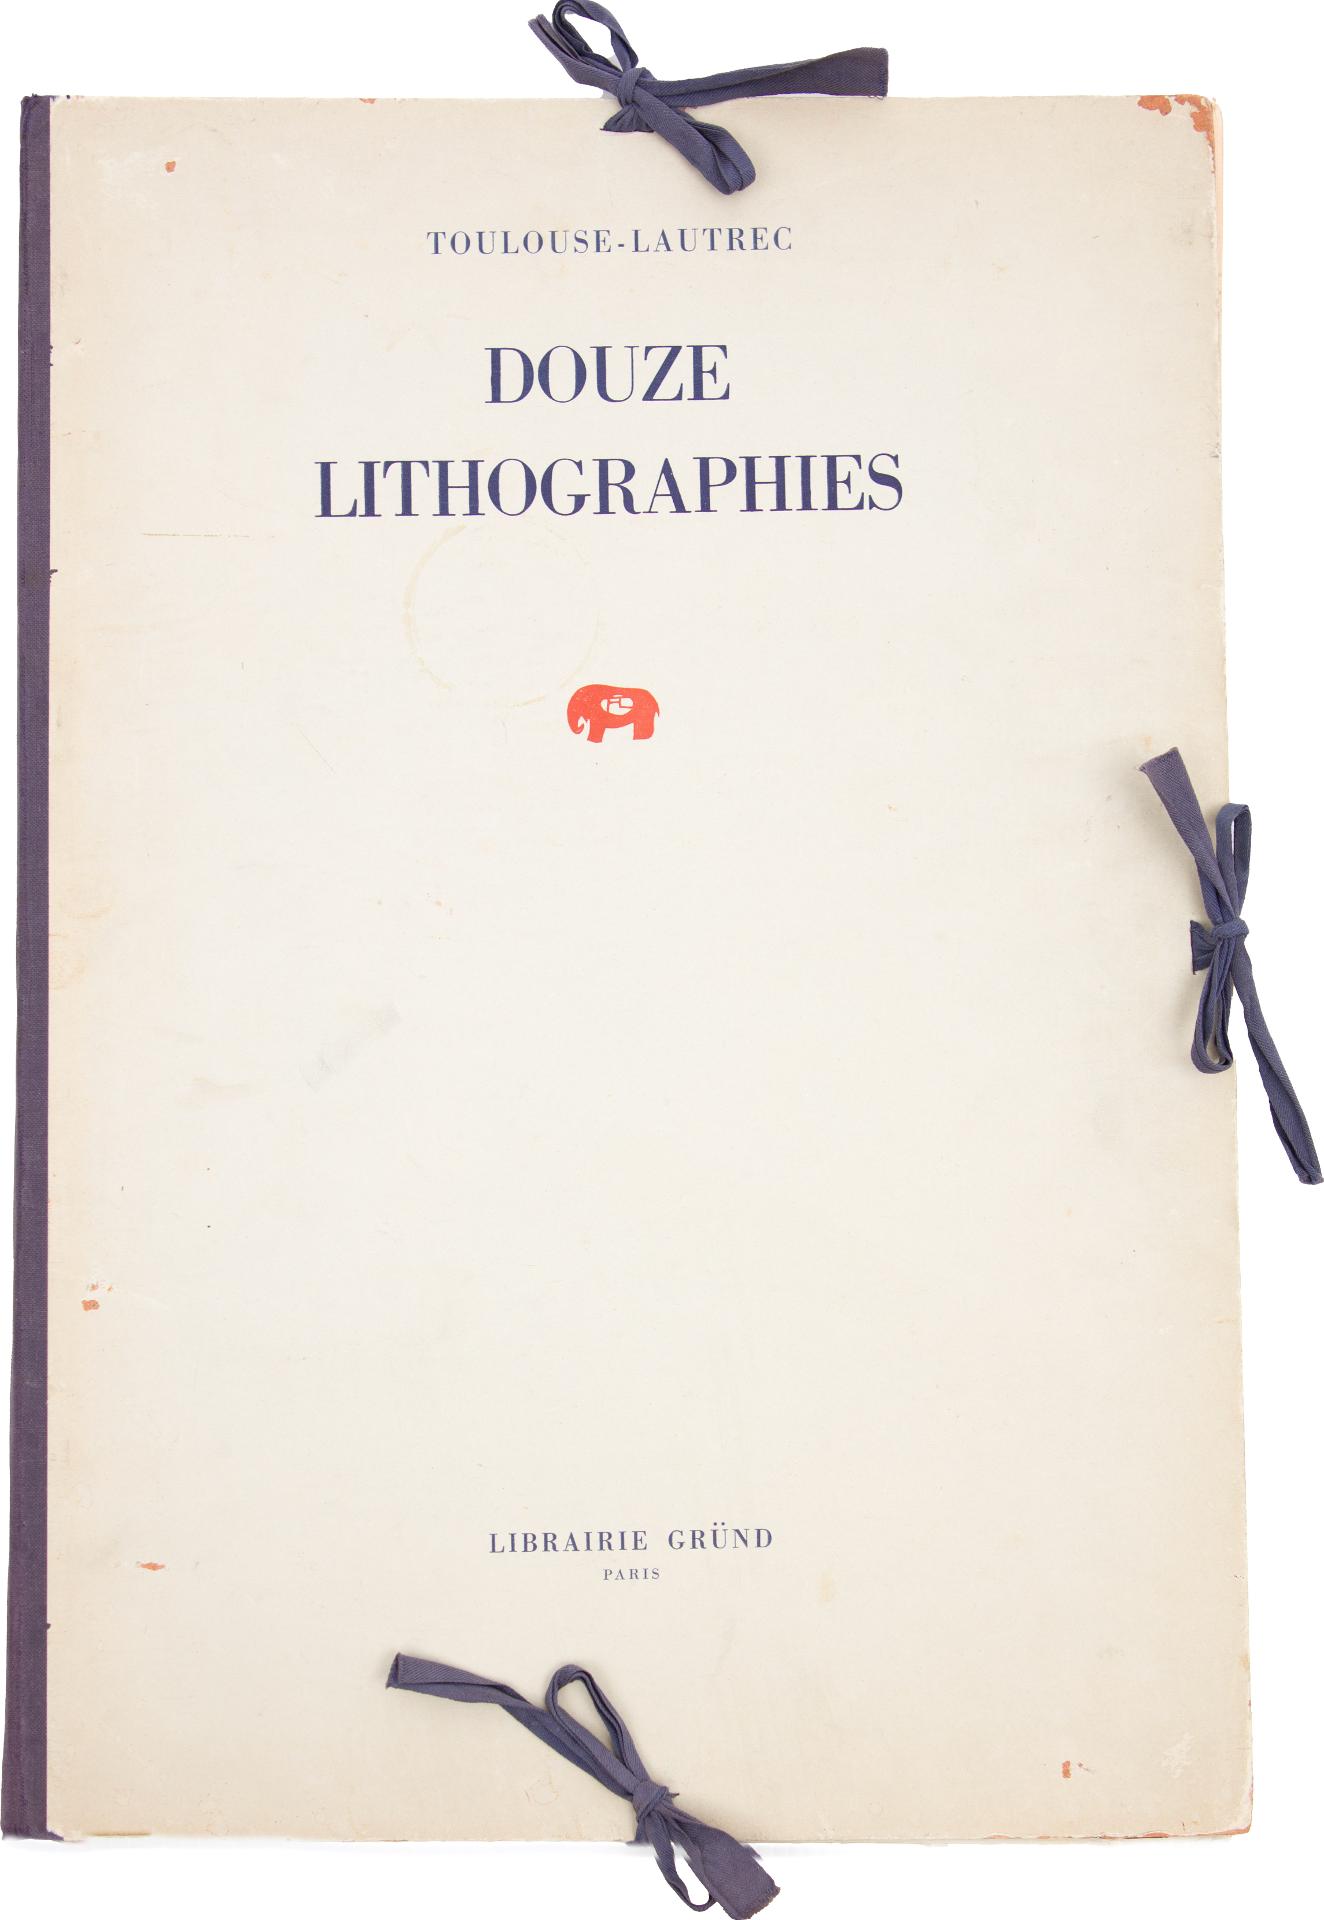 Henri de Toulouse-Lautrec (1864-1901) - Douze lithographies, 1948